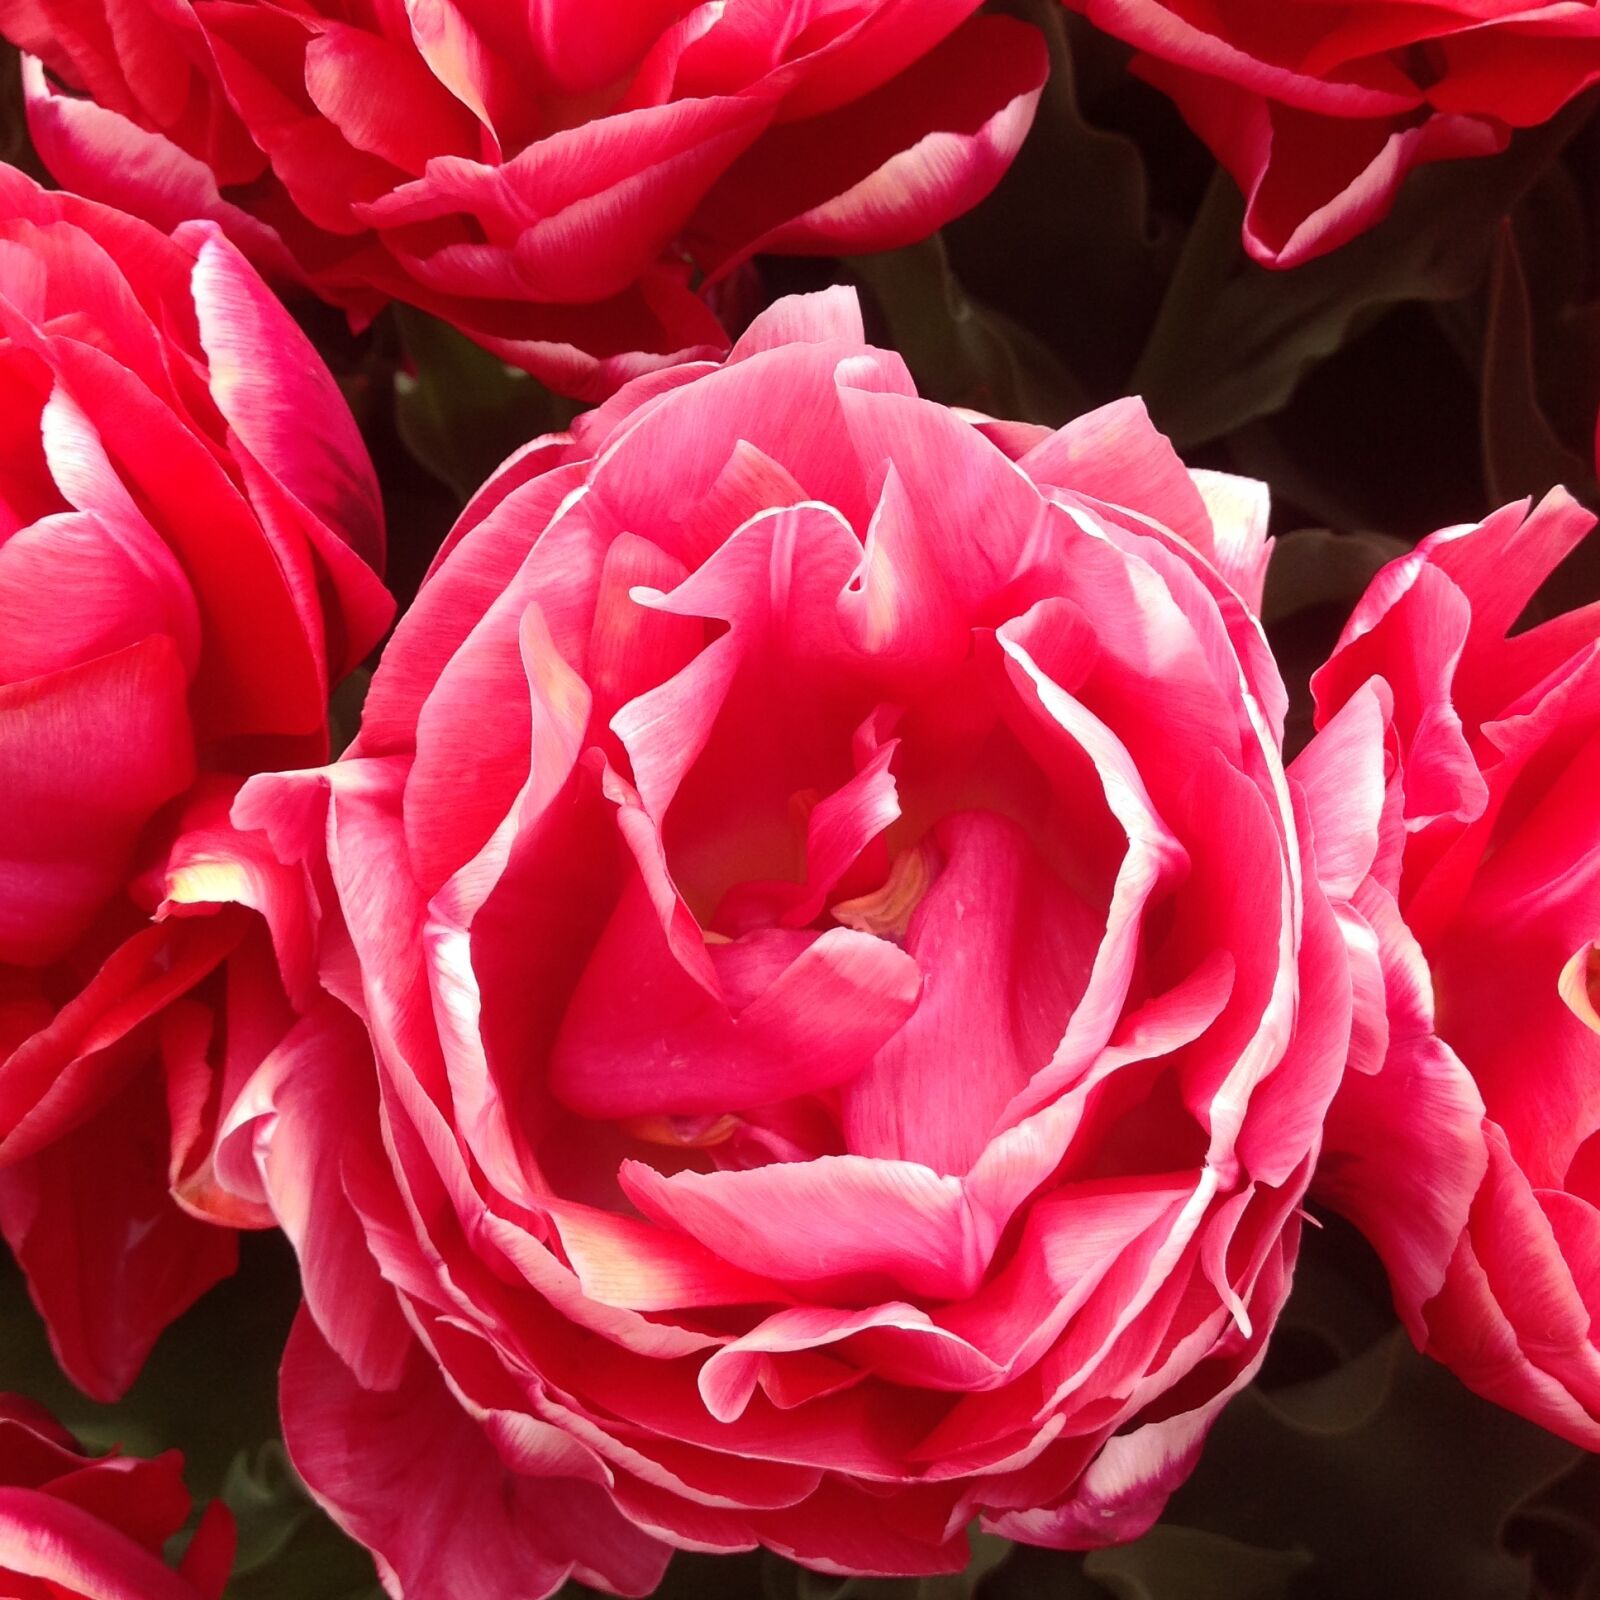 Apple iPad sample photo. Flower, tulip, keukenhof garden photography